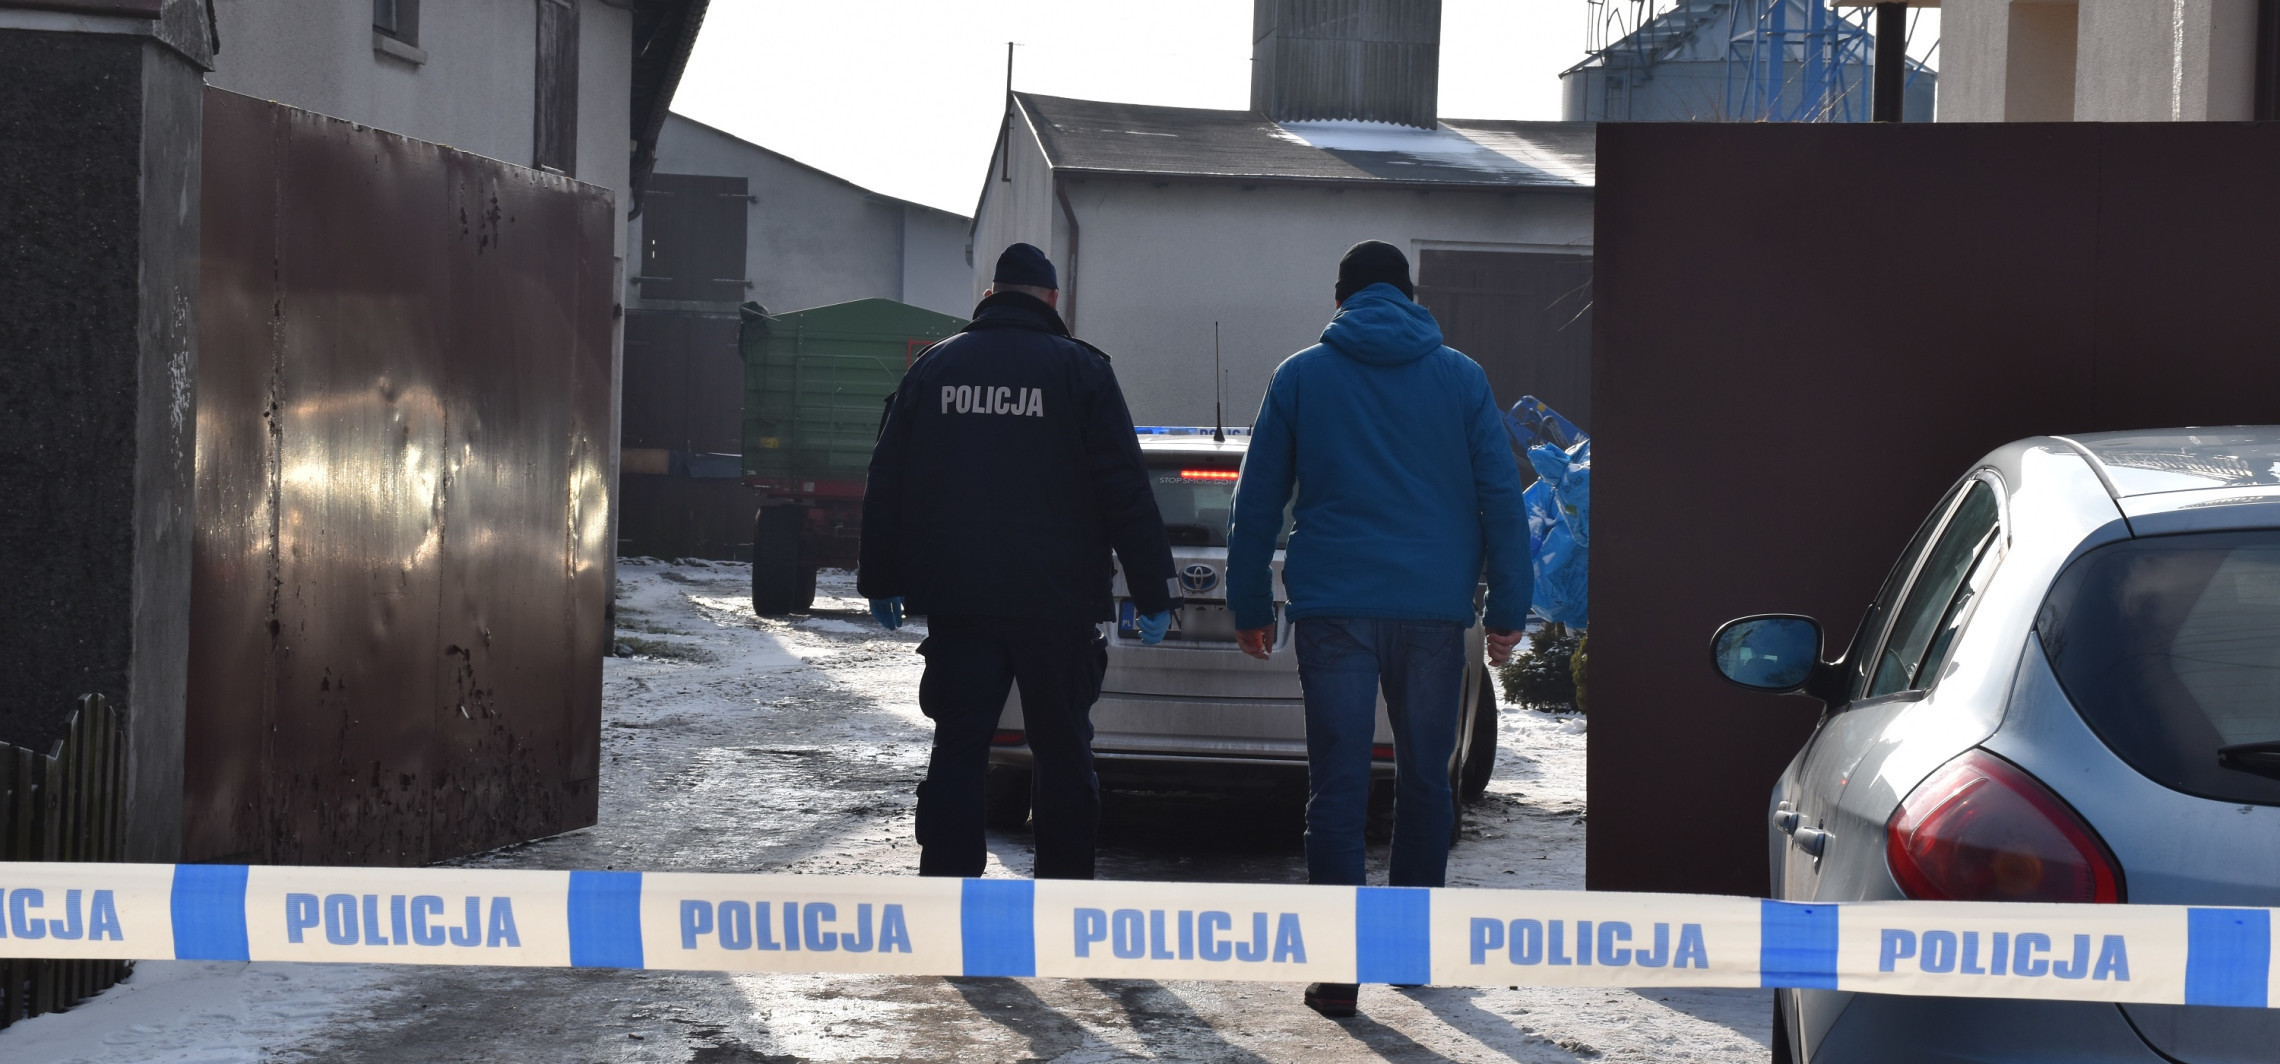 Gmina Inowrocław - Sprawa zabójstwa dzieci w Turzanach. Śledztwo umorzone